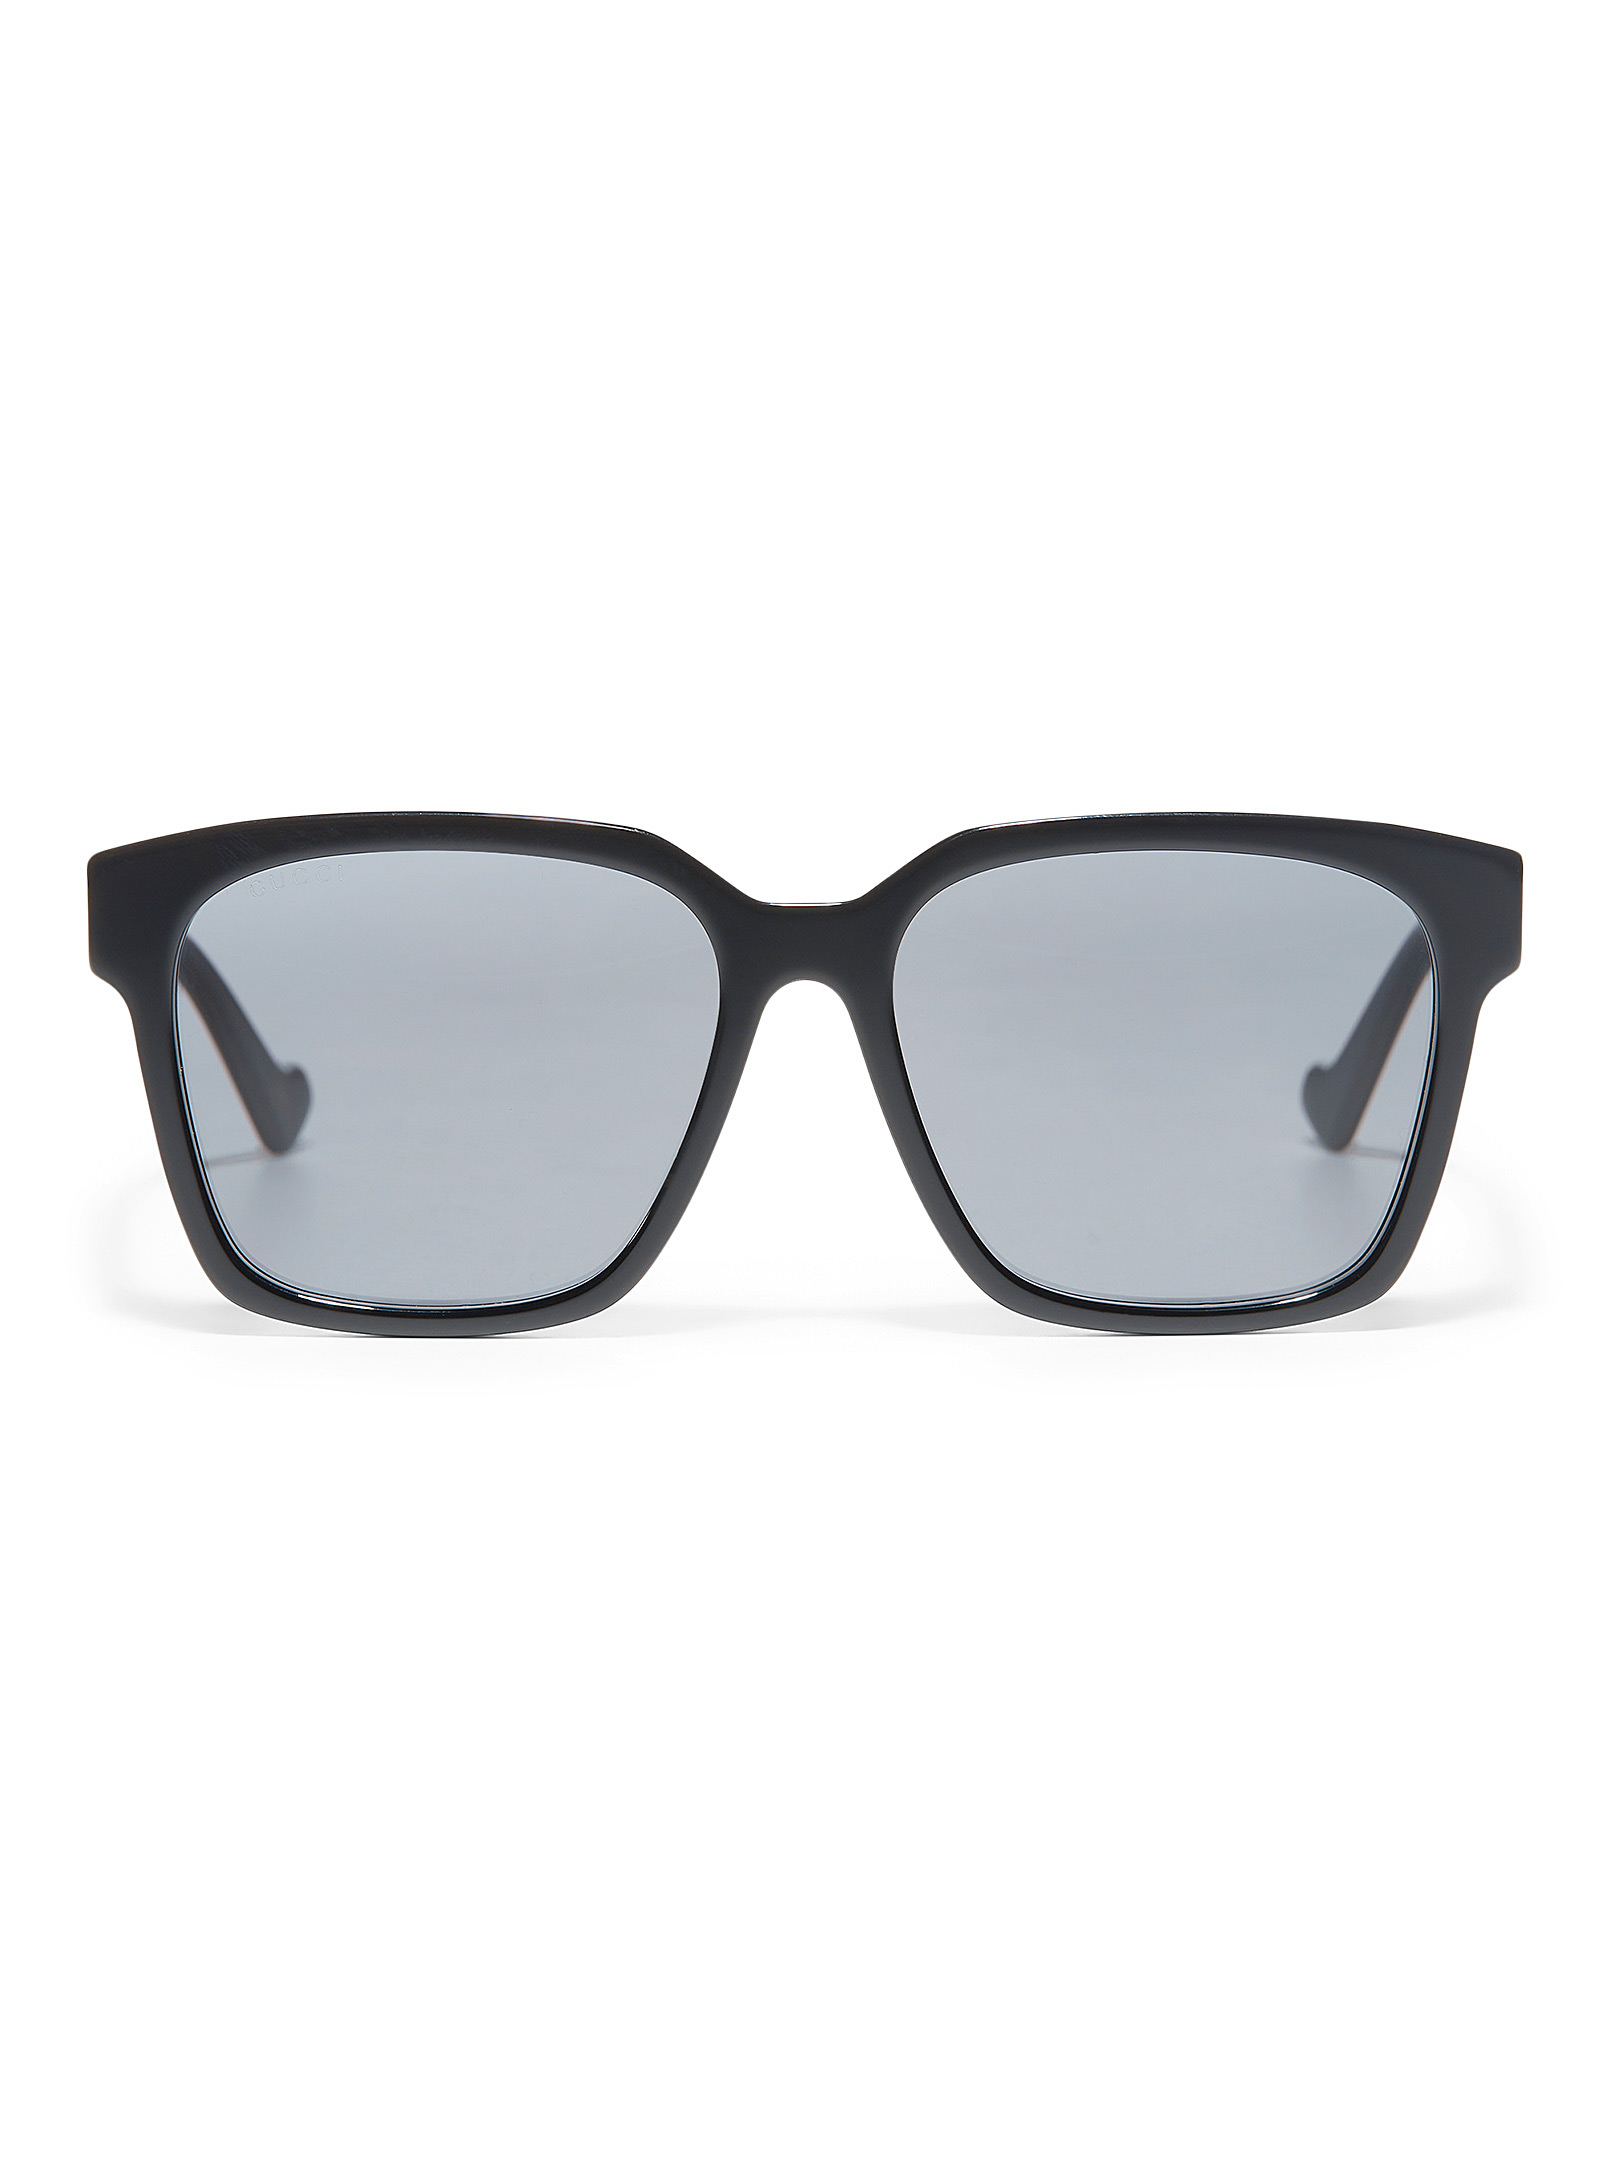 Gucci - Les lunettes de soleil carrées noires